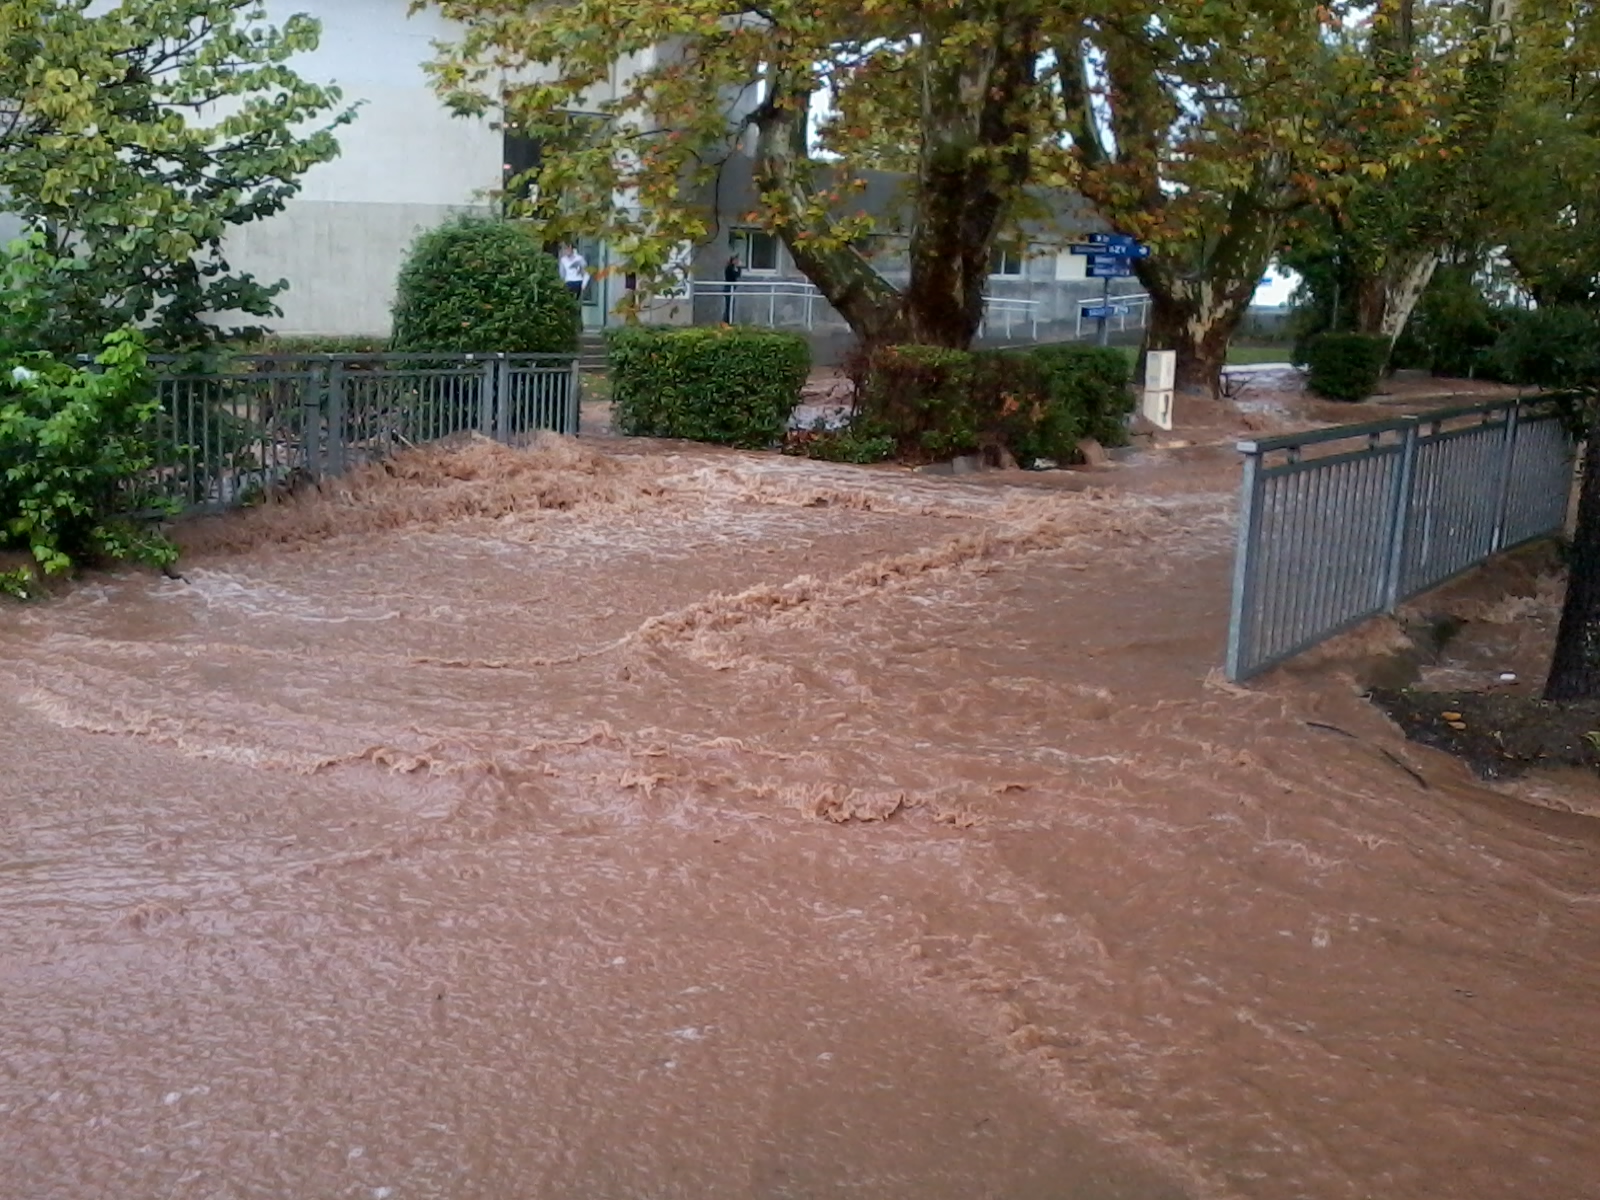  Inondations : circulation difficile à Paris, en Seine et Marne, dans le Loiret et dans l’Yonne notamment